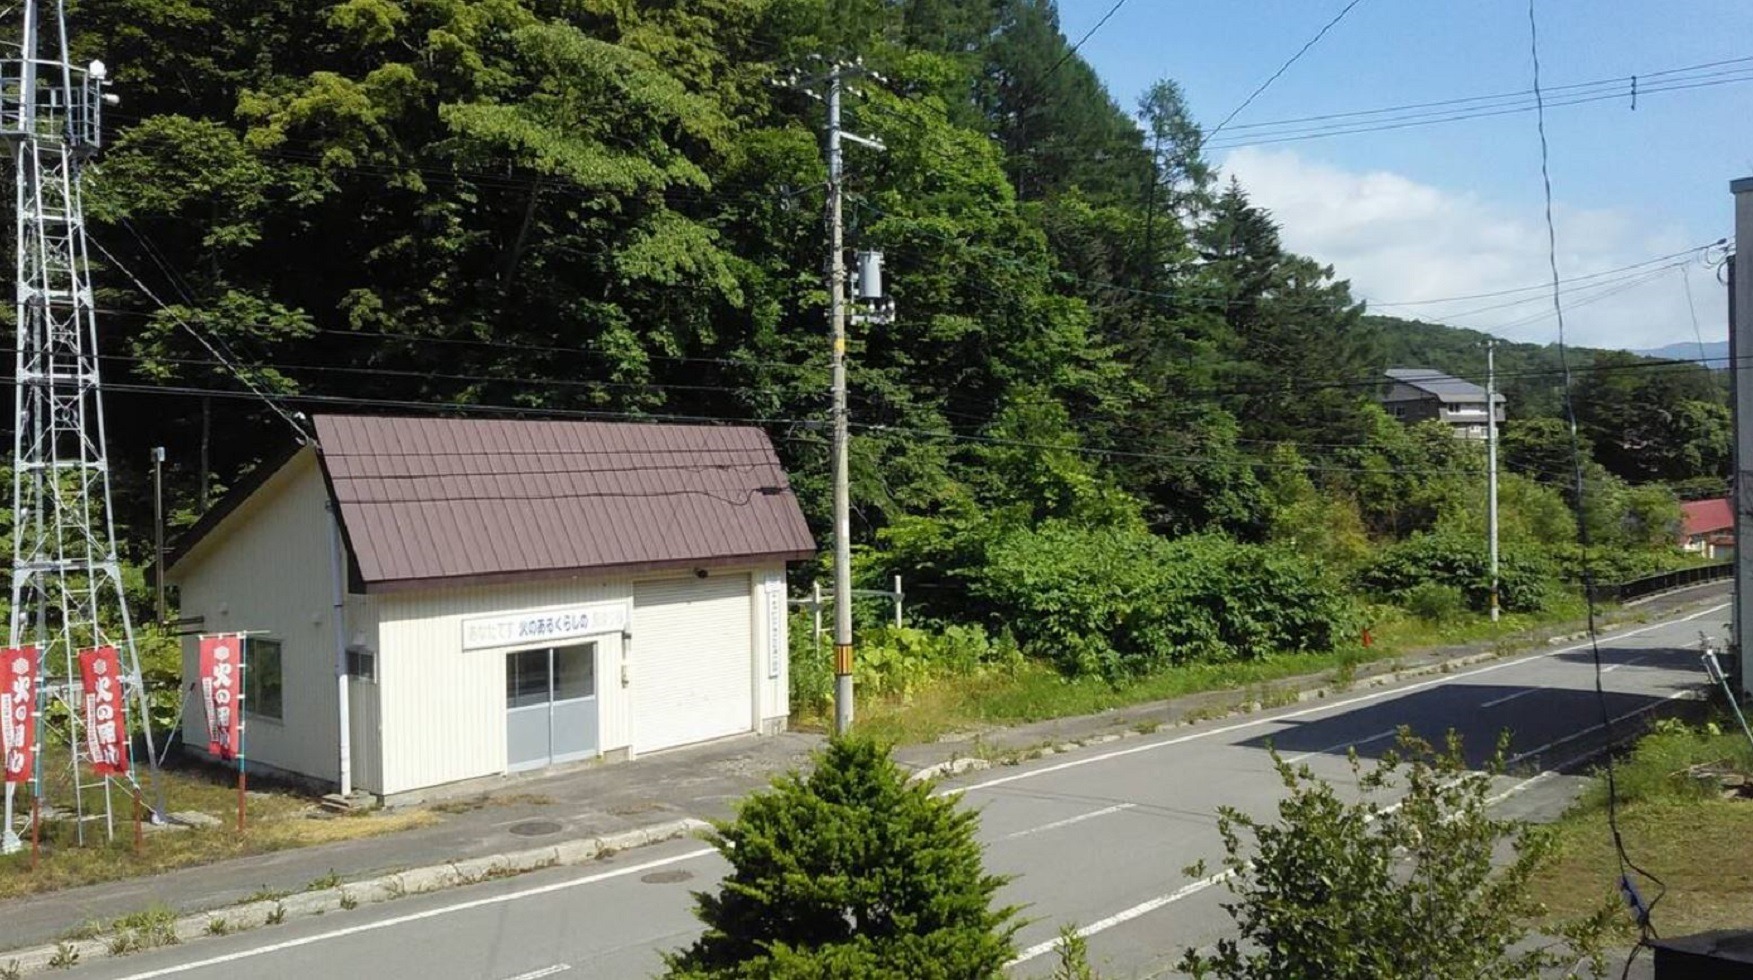 宿泊室2★最寄バス停から徒歩10分♪北海道北湯沢温泉が楽しめます!